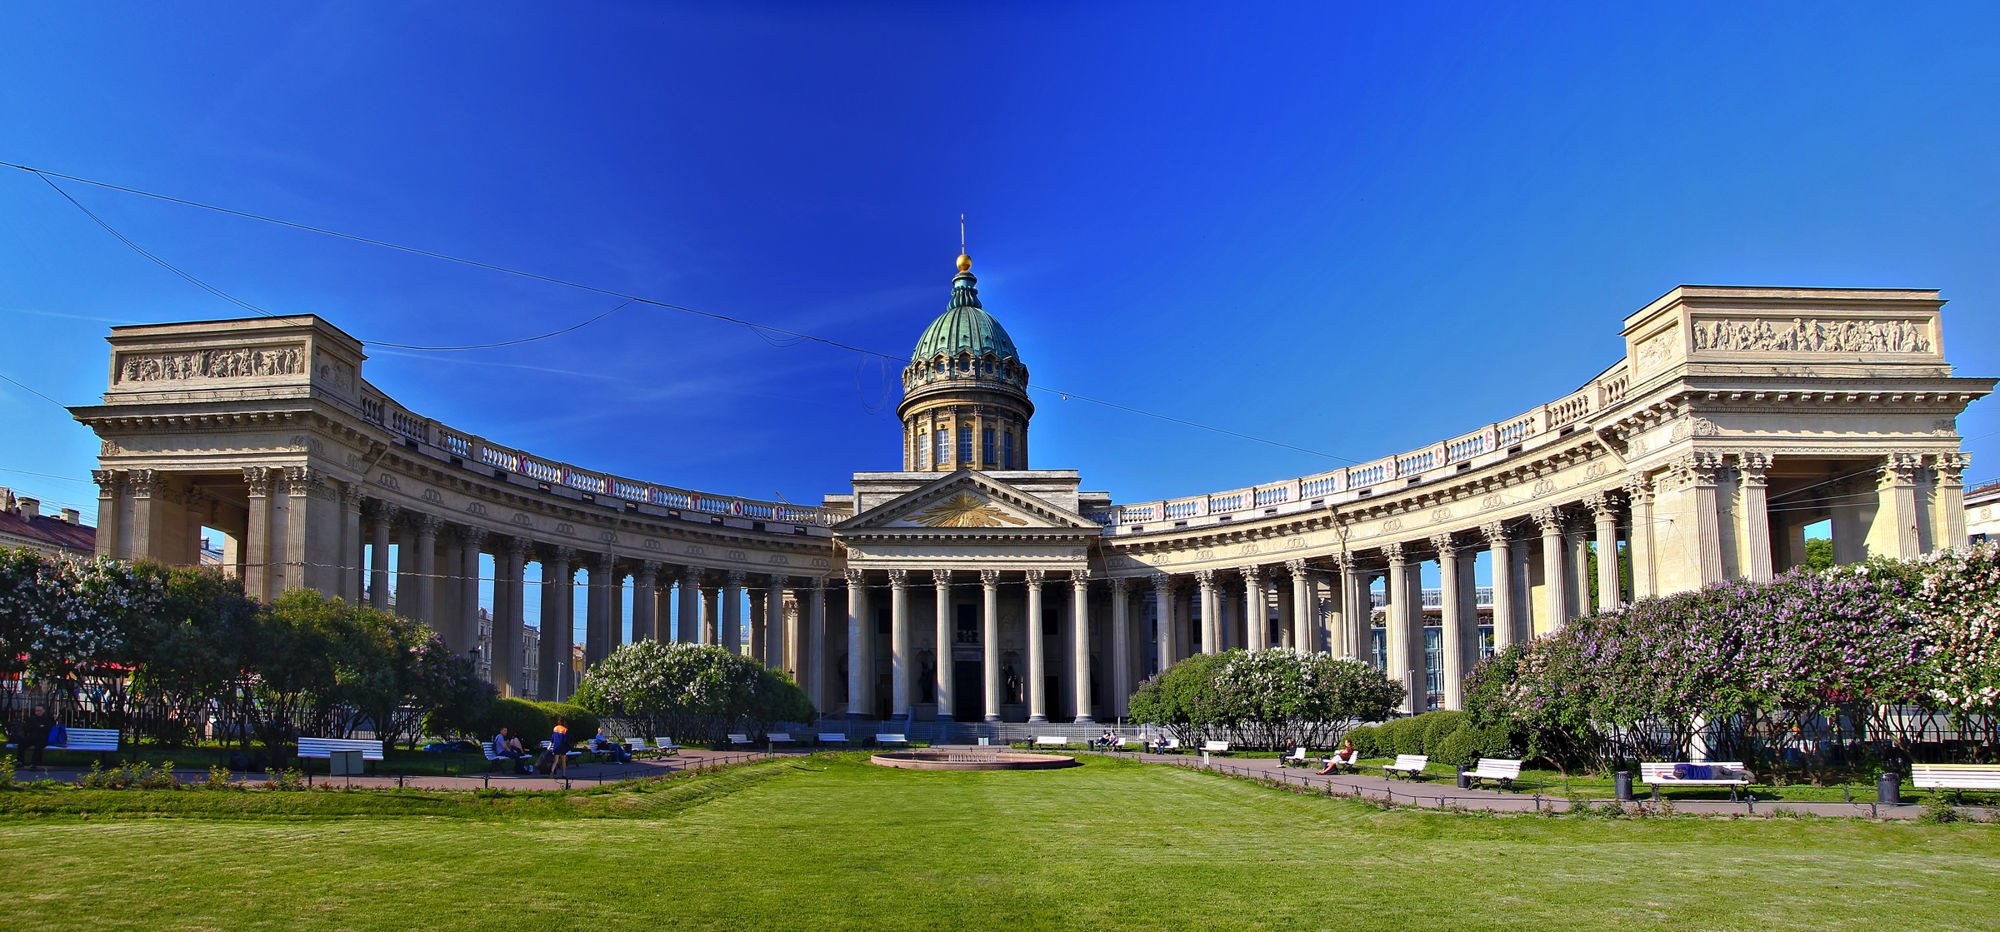 Воронихин Казанский собор 1801 - 1811